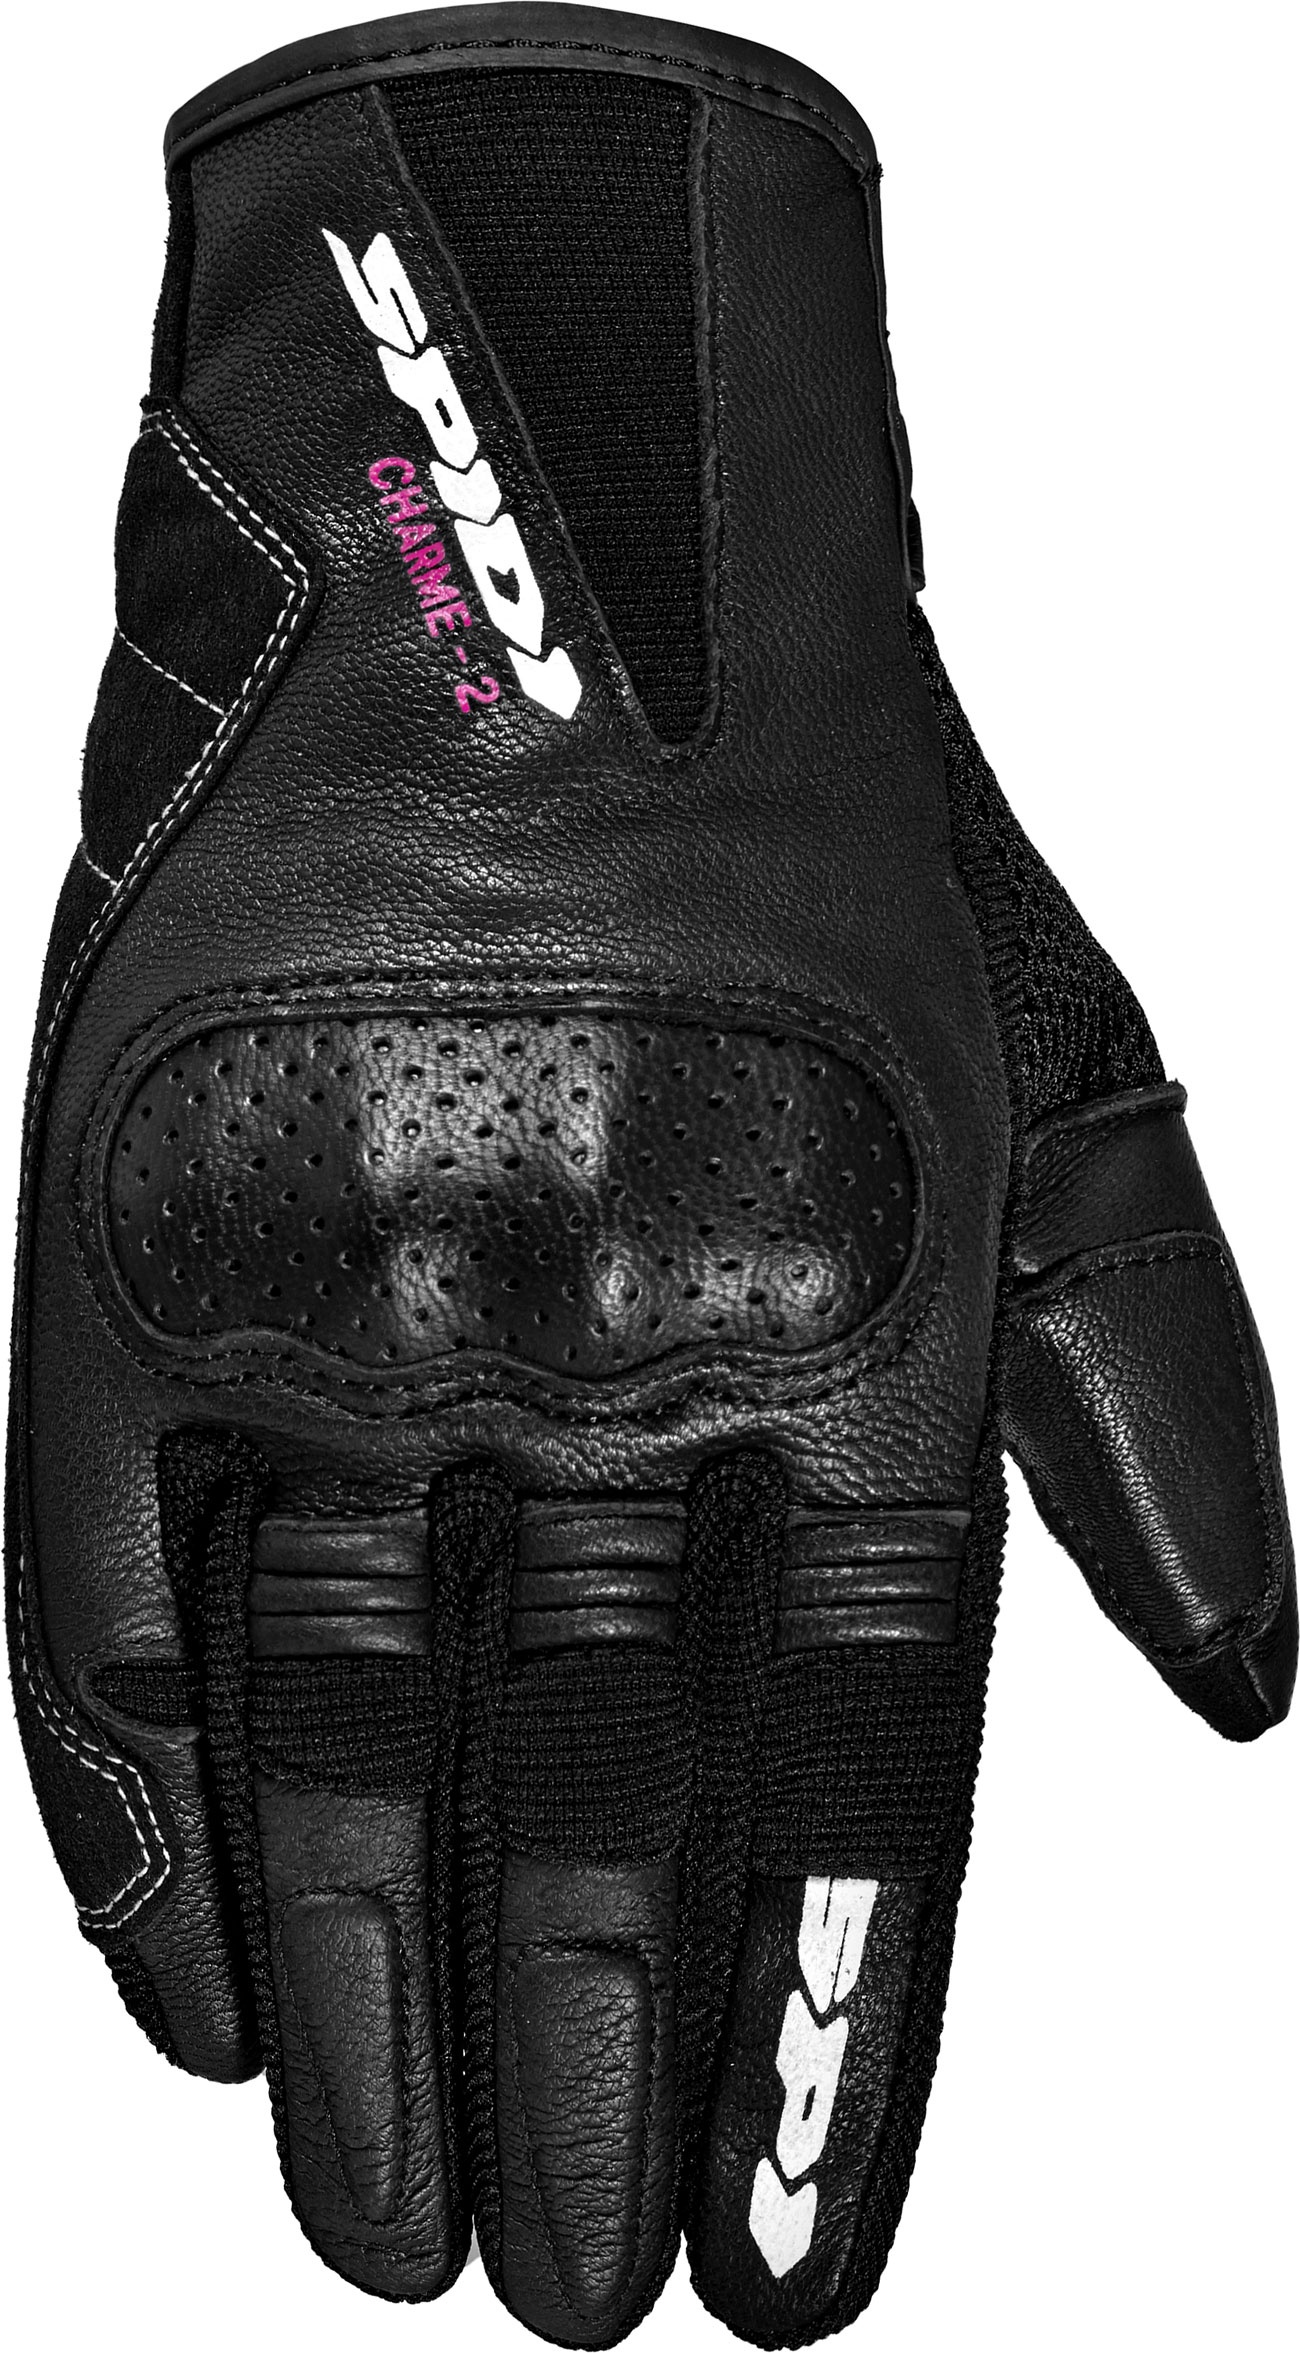 Spidi Charme 2, gants femmes - Noir - XL